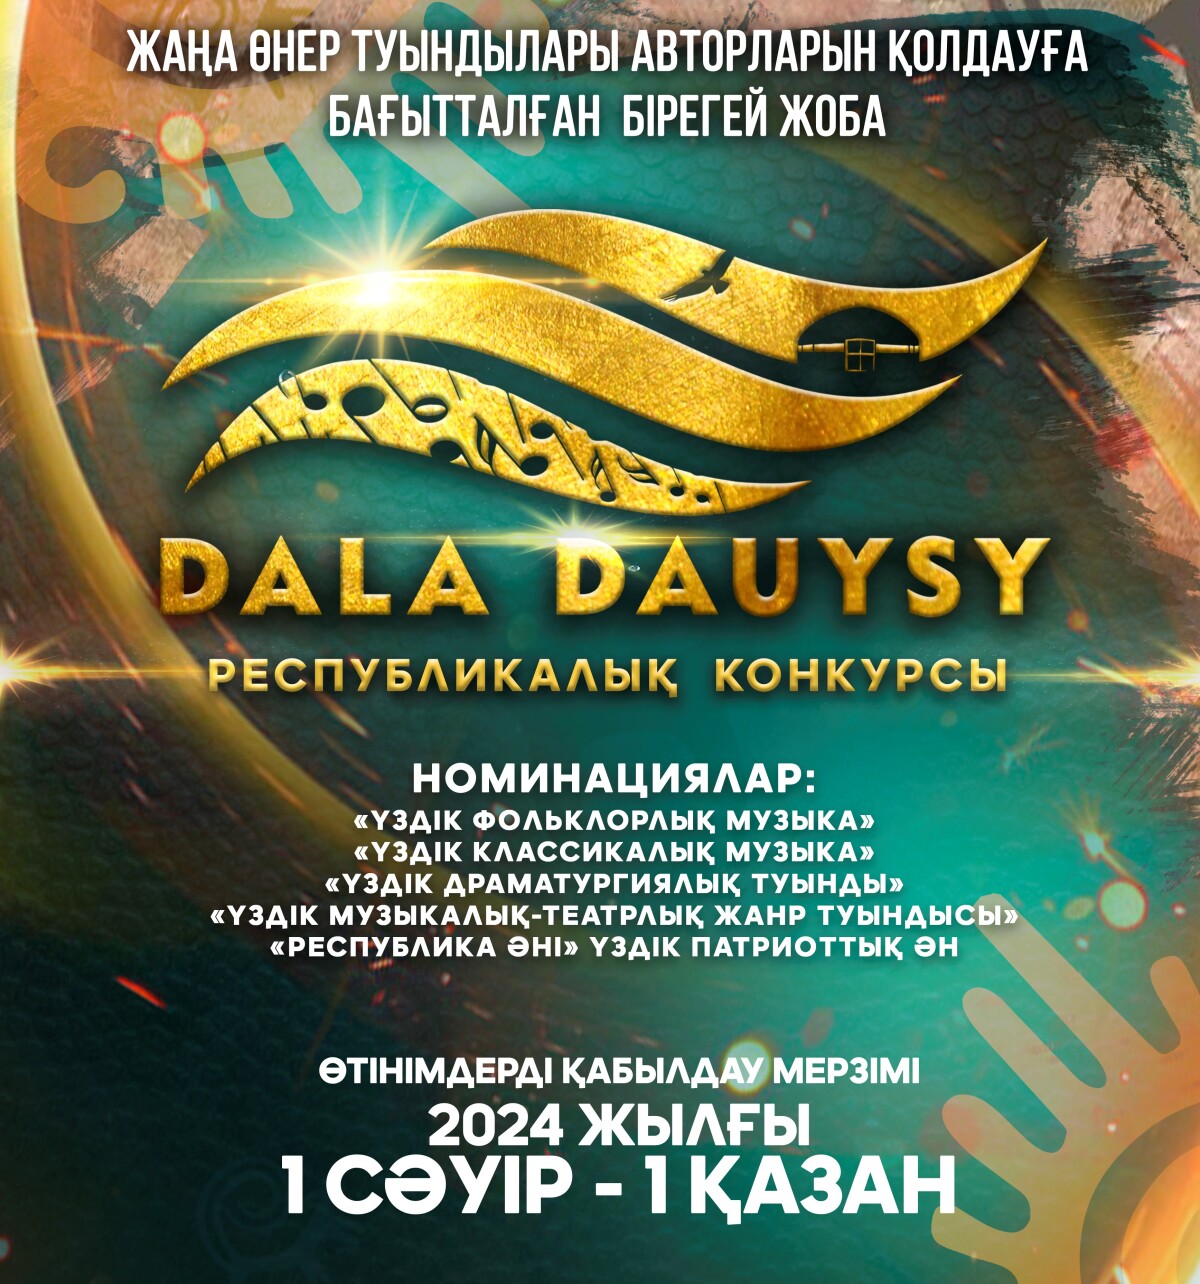 «Dala dauysy» республикалық конкурсына құжат қабылдау басталды - adebiportal.kz